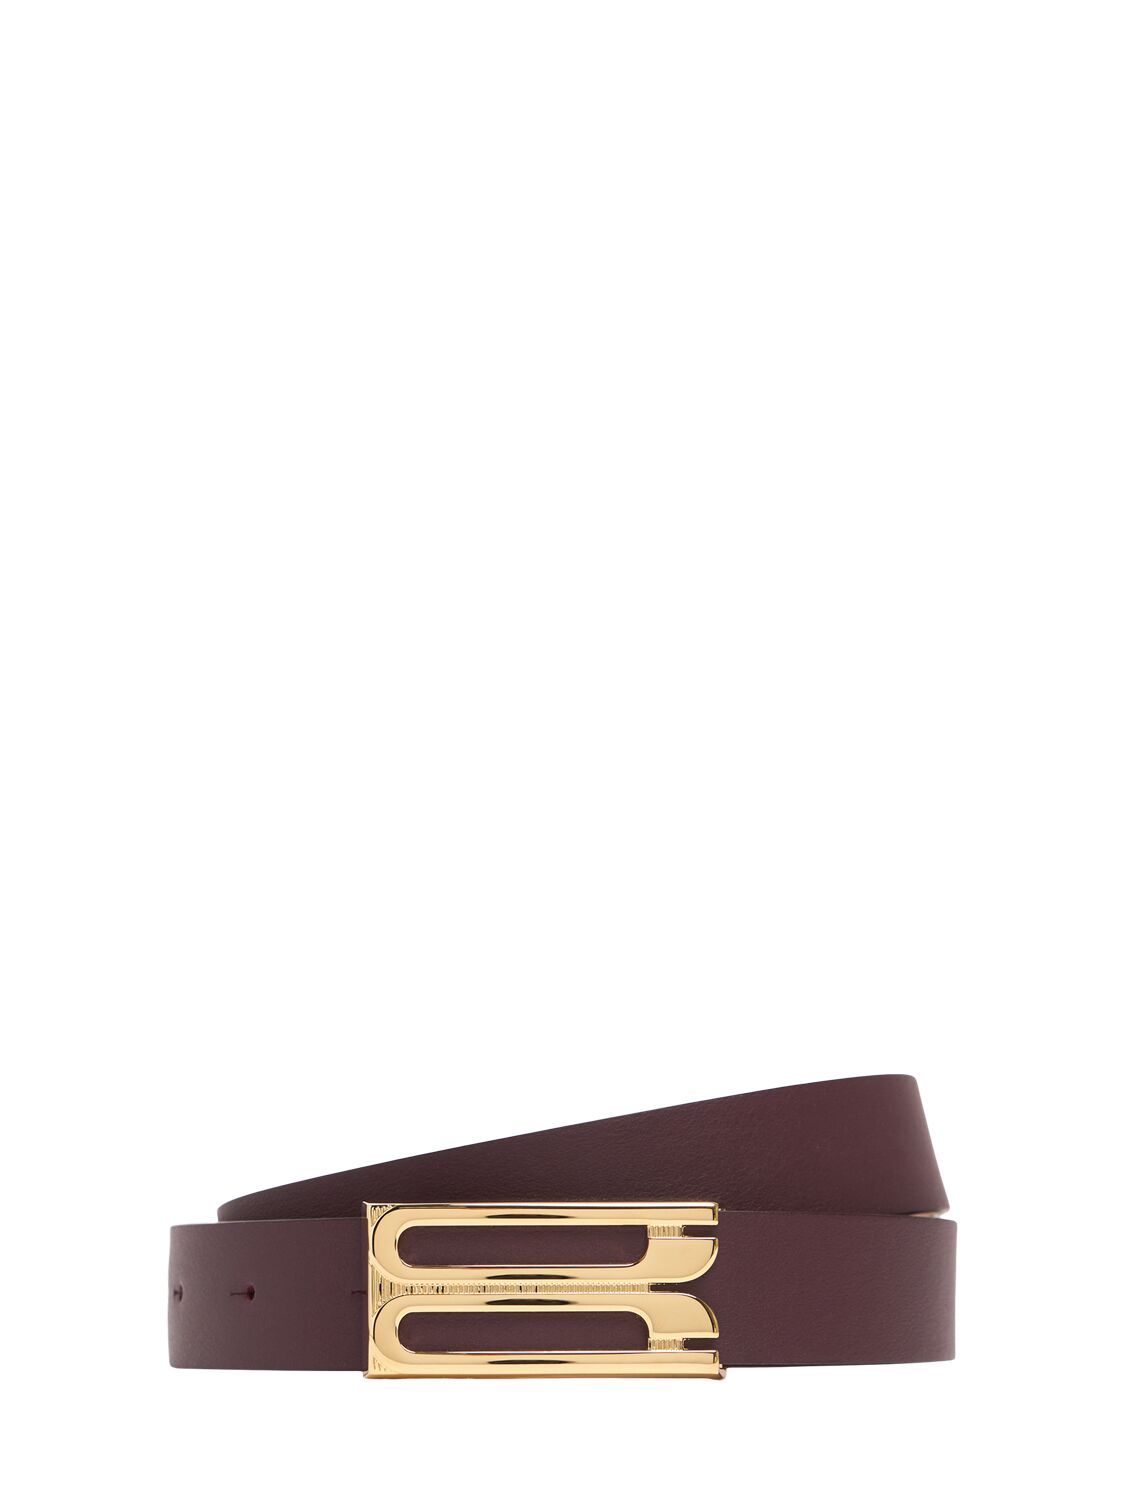 Victoria Beckham Regular Frame Smooth Leather Belt In Burgundy